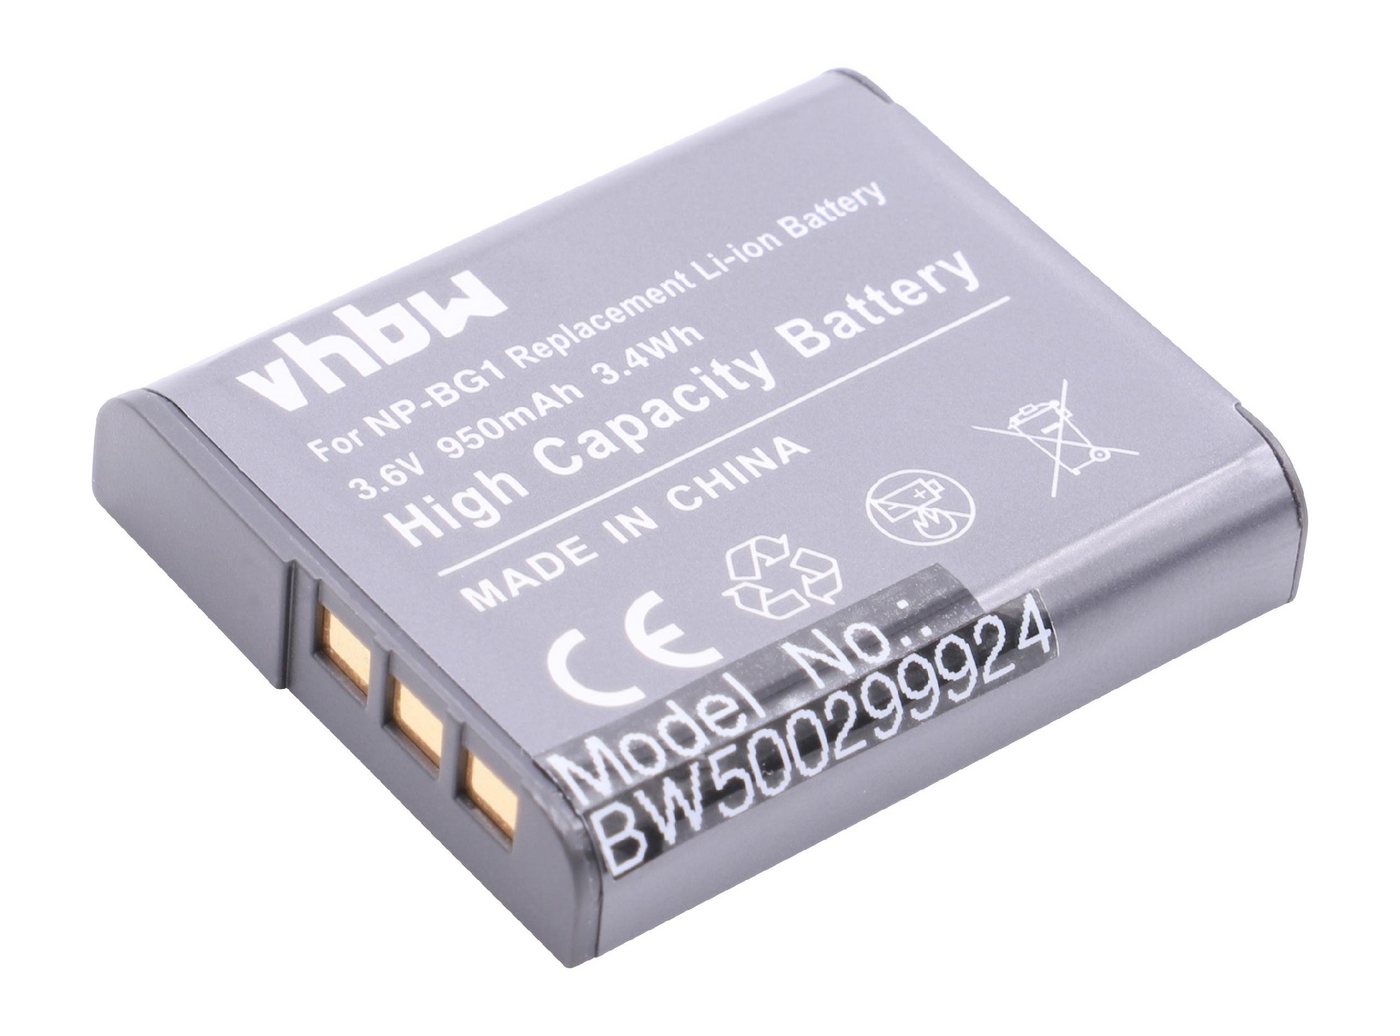 vhbw Kamera-Akku passend für Kompatibel mit Sony Cybershot DSC-W215, DSC-W220, DSC-W230, DSC-W270, DSC-W275, DSC-W290 Kamera / Foto Kompakt (950mAh, 3,6V, Li-Ion) 950 mAh von vhbw